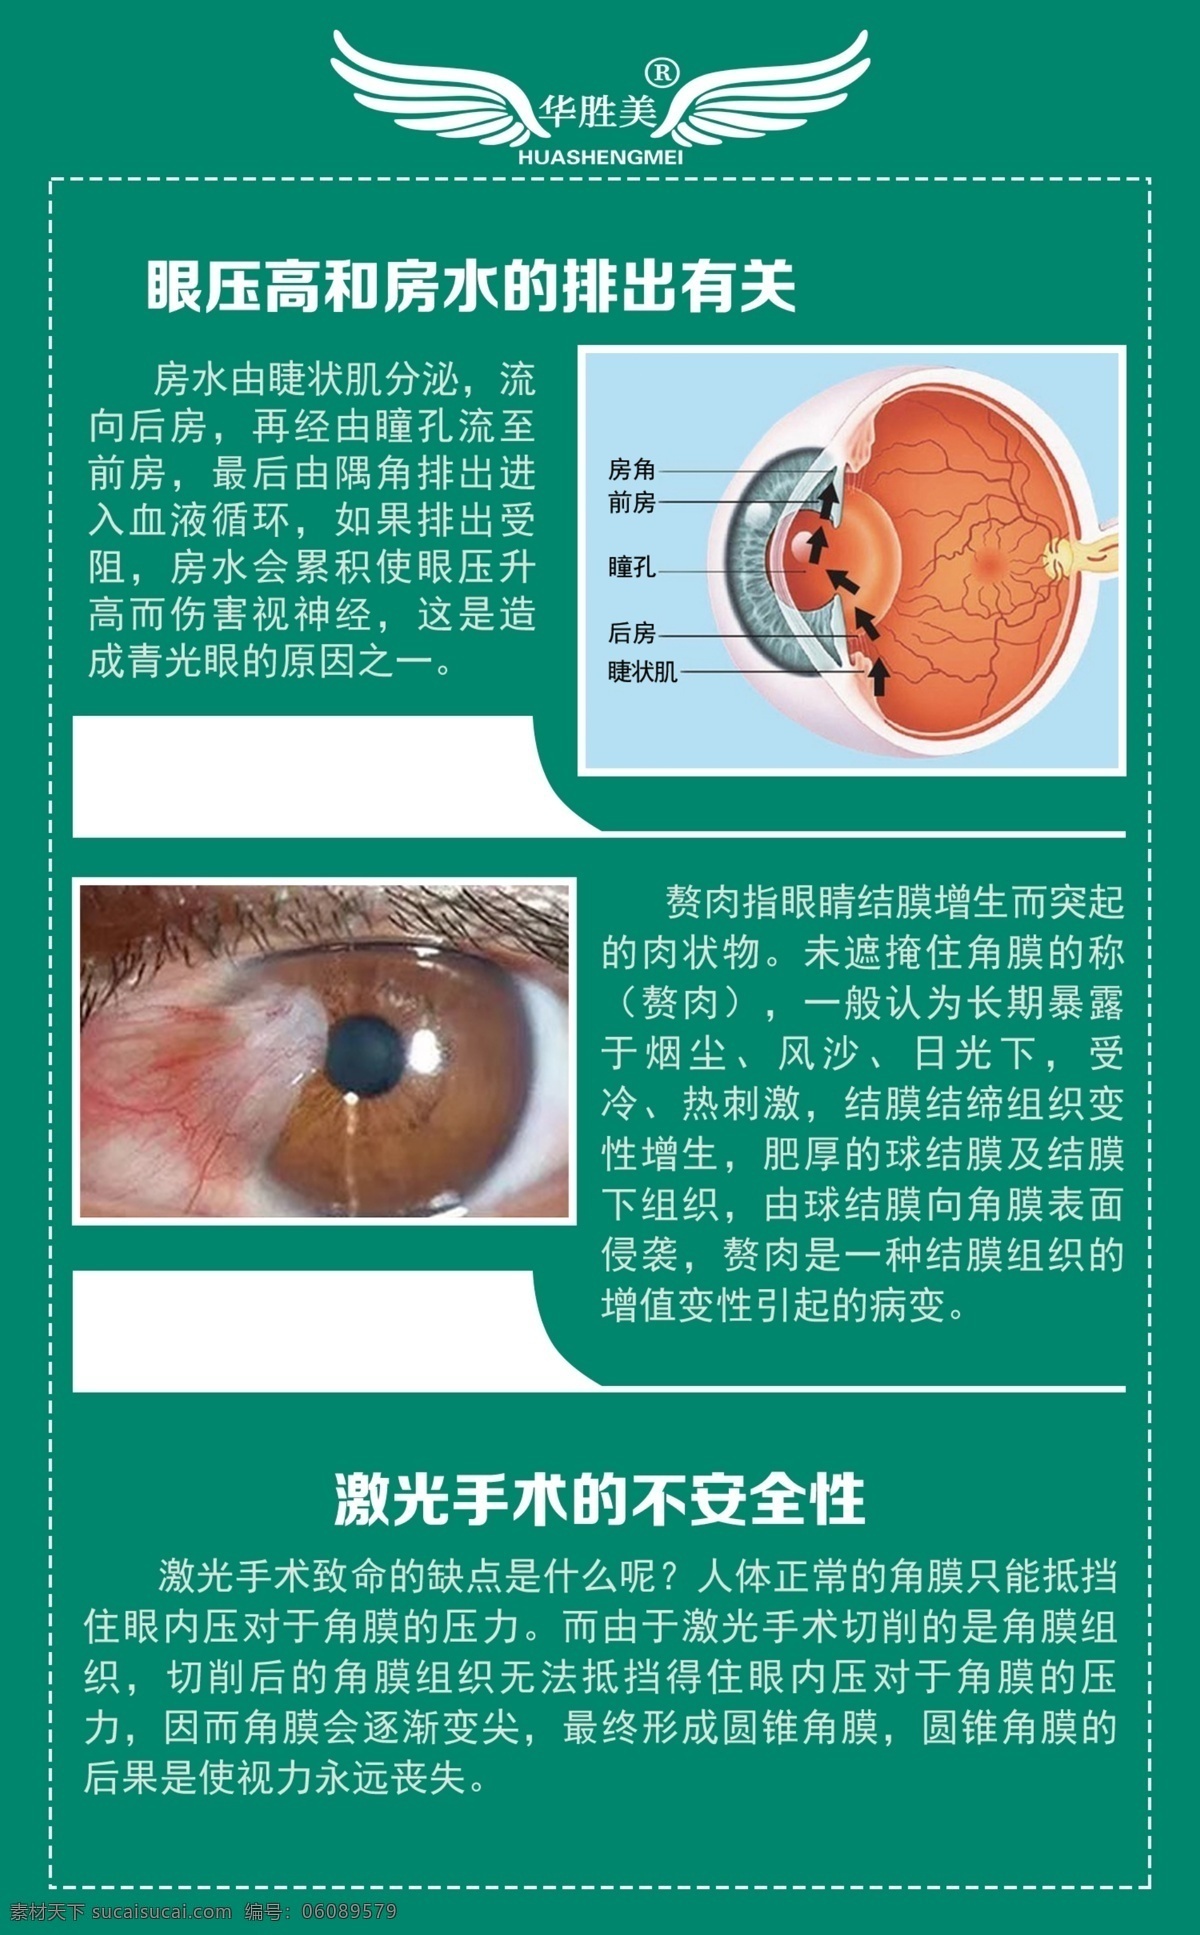 眼球结构图 好视力眼贴 好视力 眼贴 眼睛 眼科 眼镜 亨柏眼镜 眼球 结构图 眼睛制度 护眼 视力保护 雾美优视 视力知识 保护眼睛知识